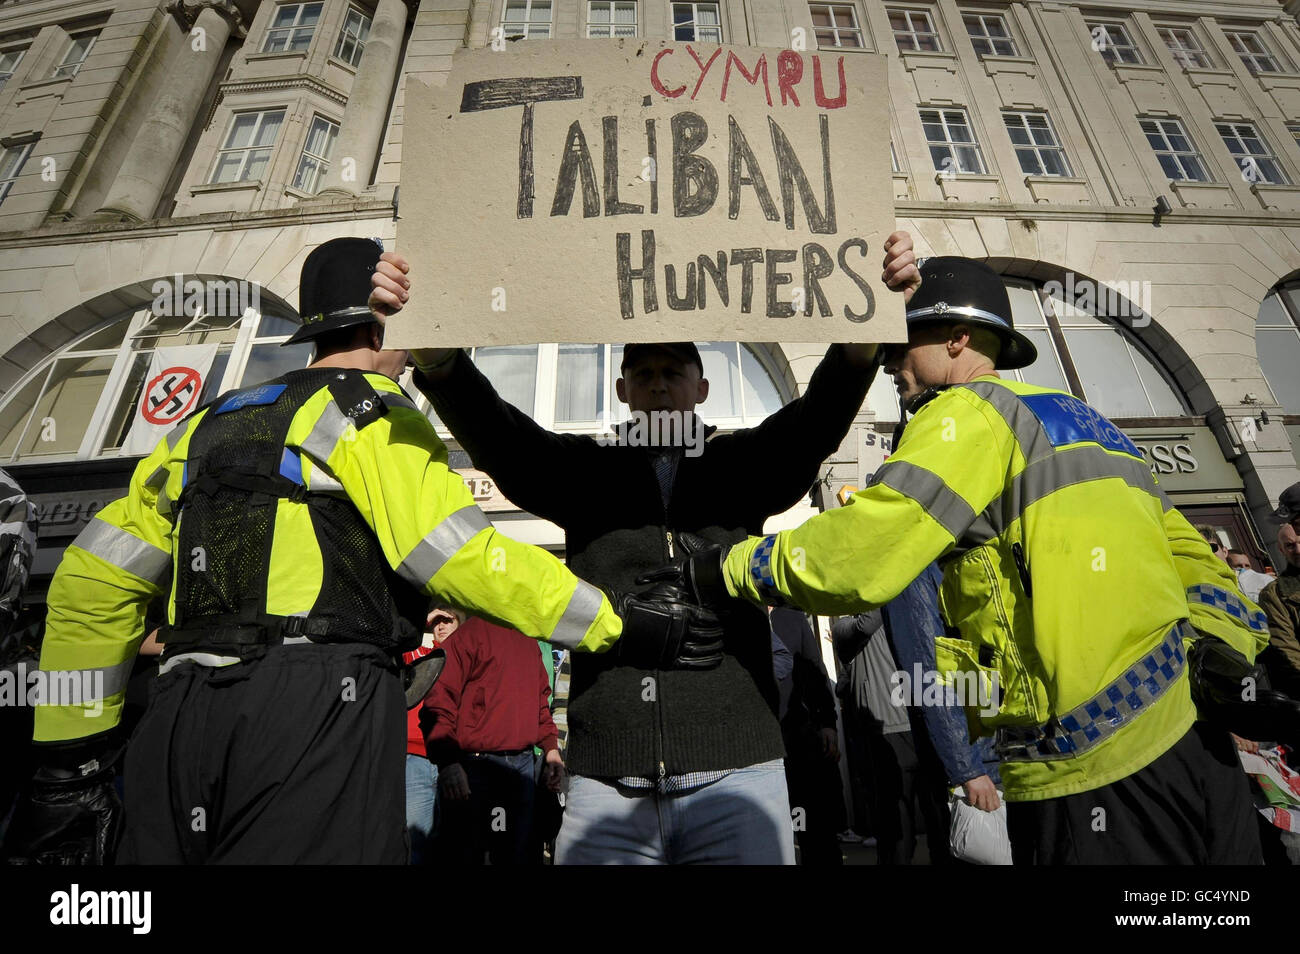 Ein Protestler der Walisischen Verteidigungsliga hält ein selbstgemachtes Plakat mit der Aufschrift „Cymru Taliban Hunters“, da die Their-Gruppe während eines Protestes in der Nähe des Castle Square in Swansea, Wales, von den antifaschistischen Demonstranten von der Polizei getrennt wird. Stockfoto